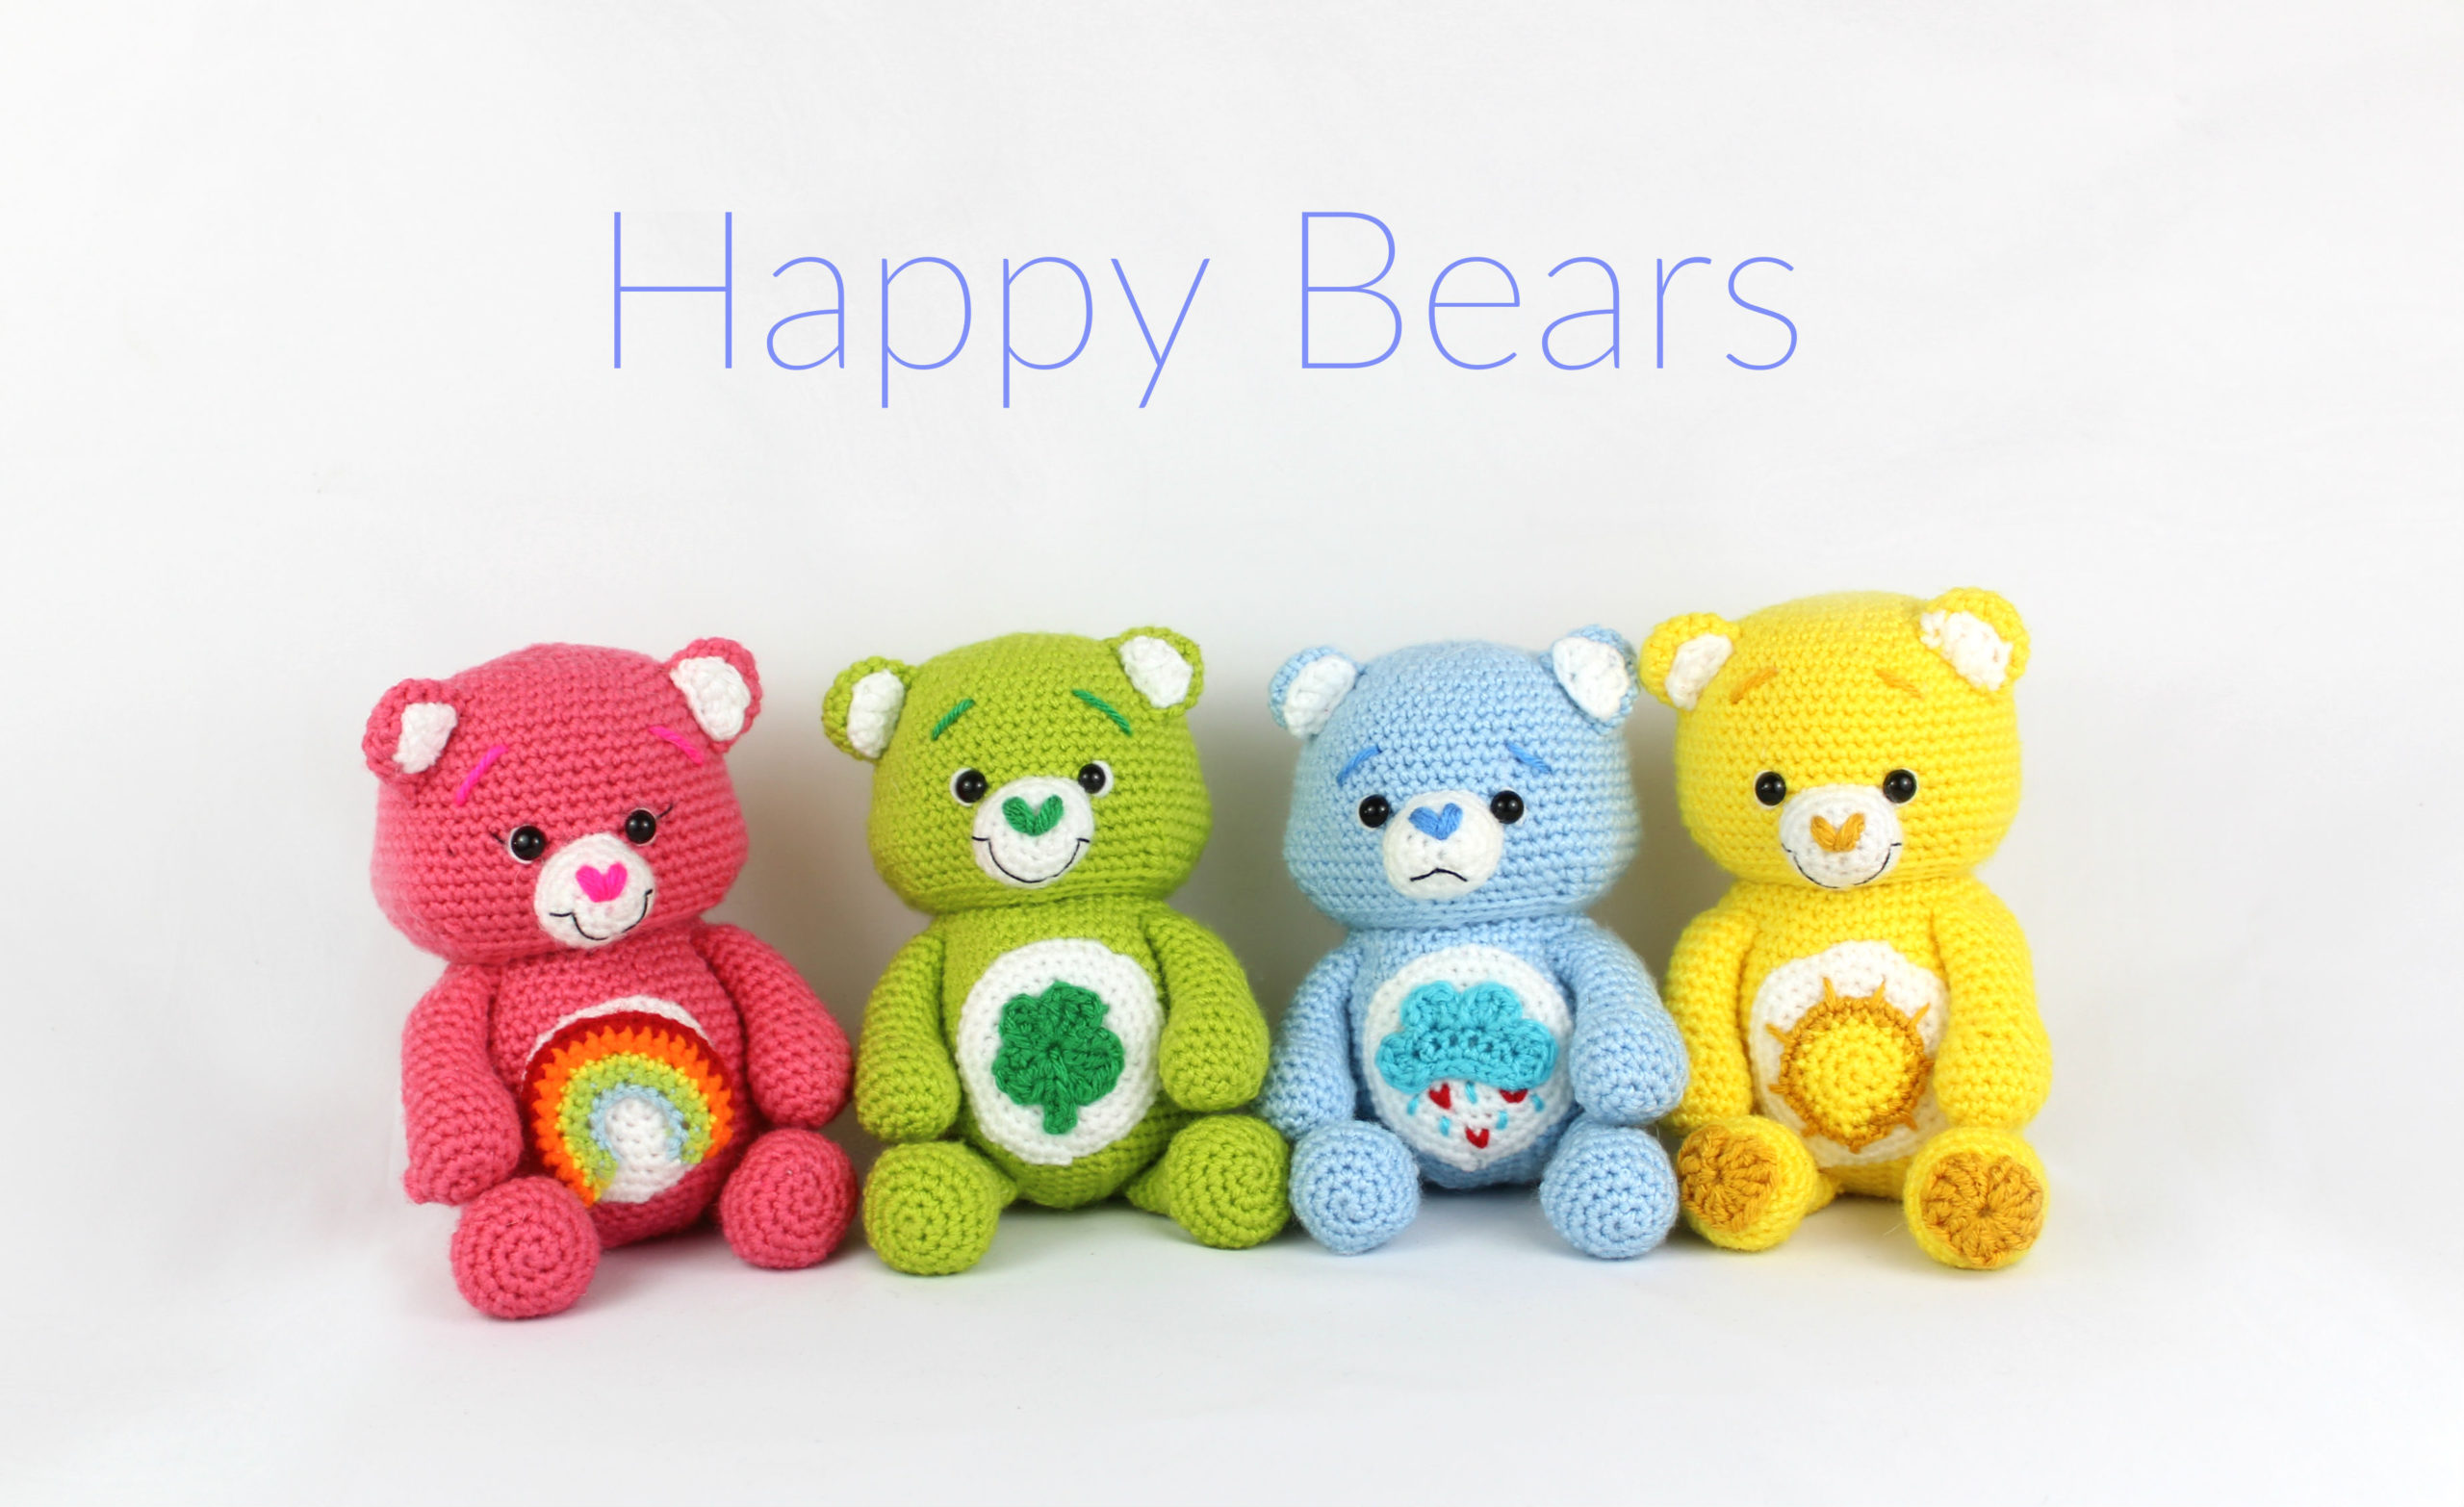 Happy Bears Free Amigurumi Crochet Pattern